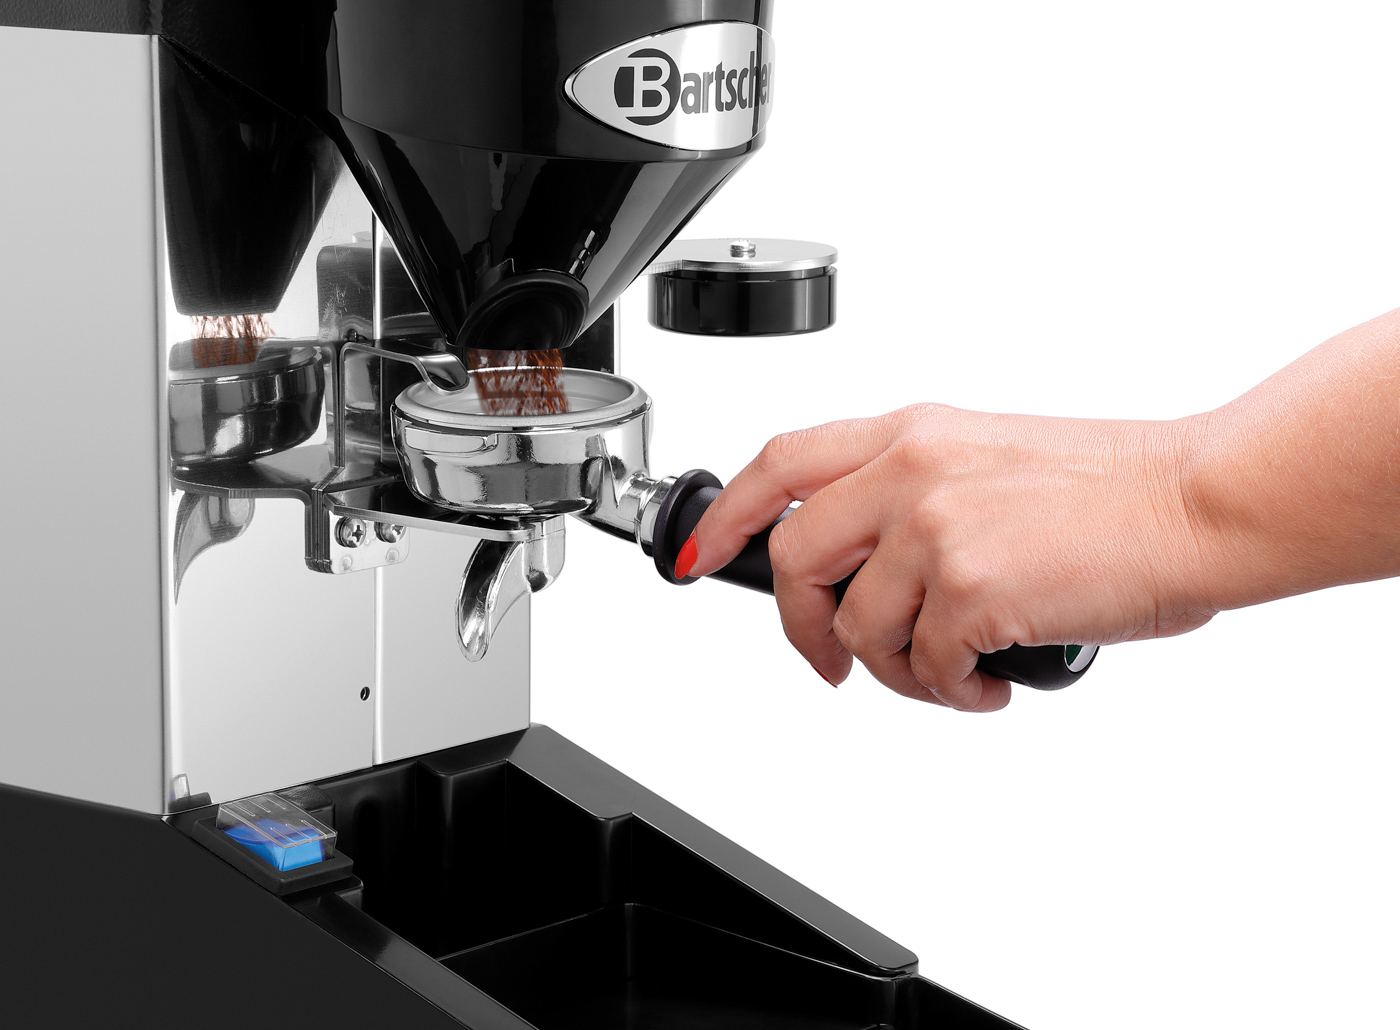 Bartscher Kaffeemühle Tauro Digital | Spannung:230 V | Maße: 21,5 x 38,5 x 51,5 cm. Gewicht: 7,9kg